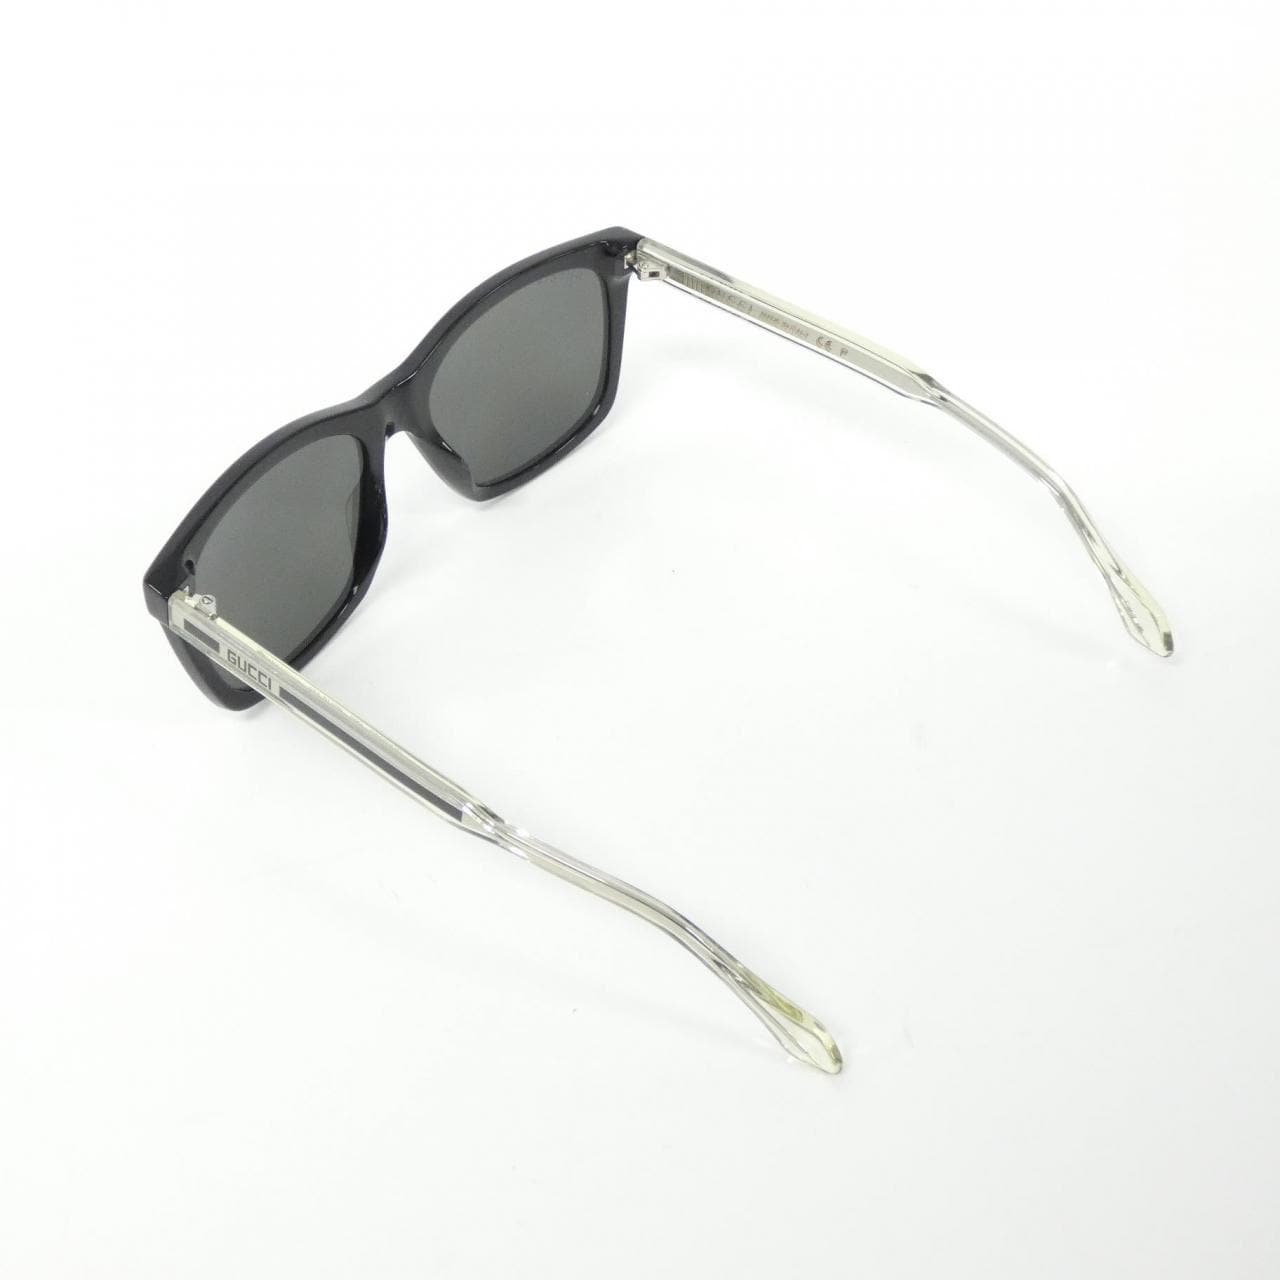 Gucci GG0558S Sunglasses